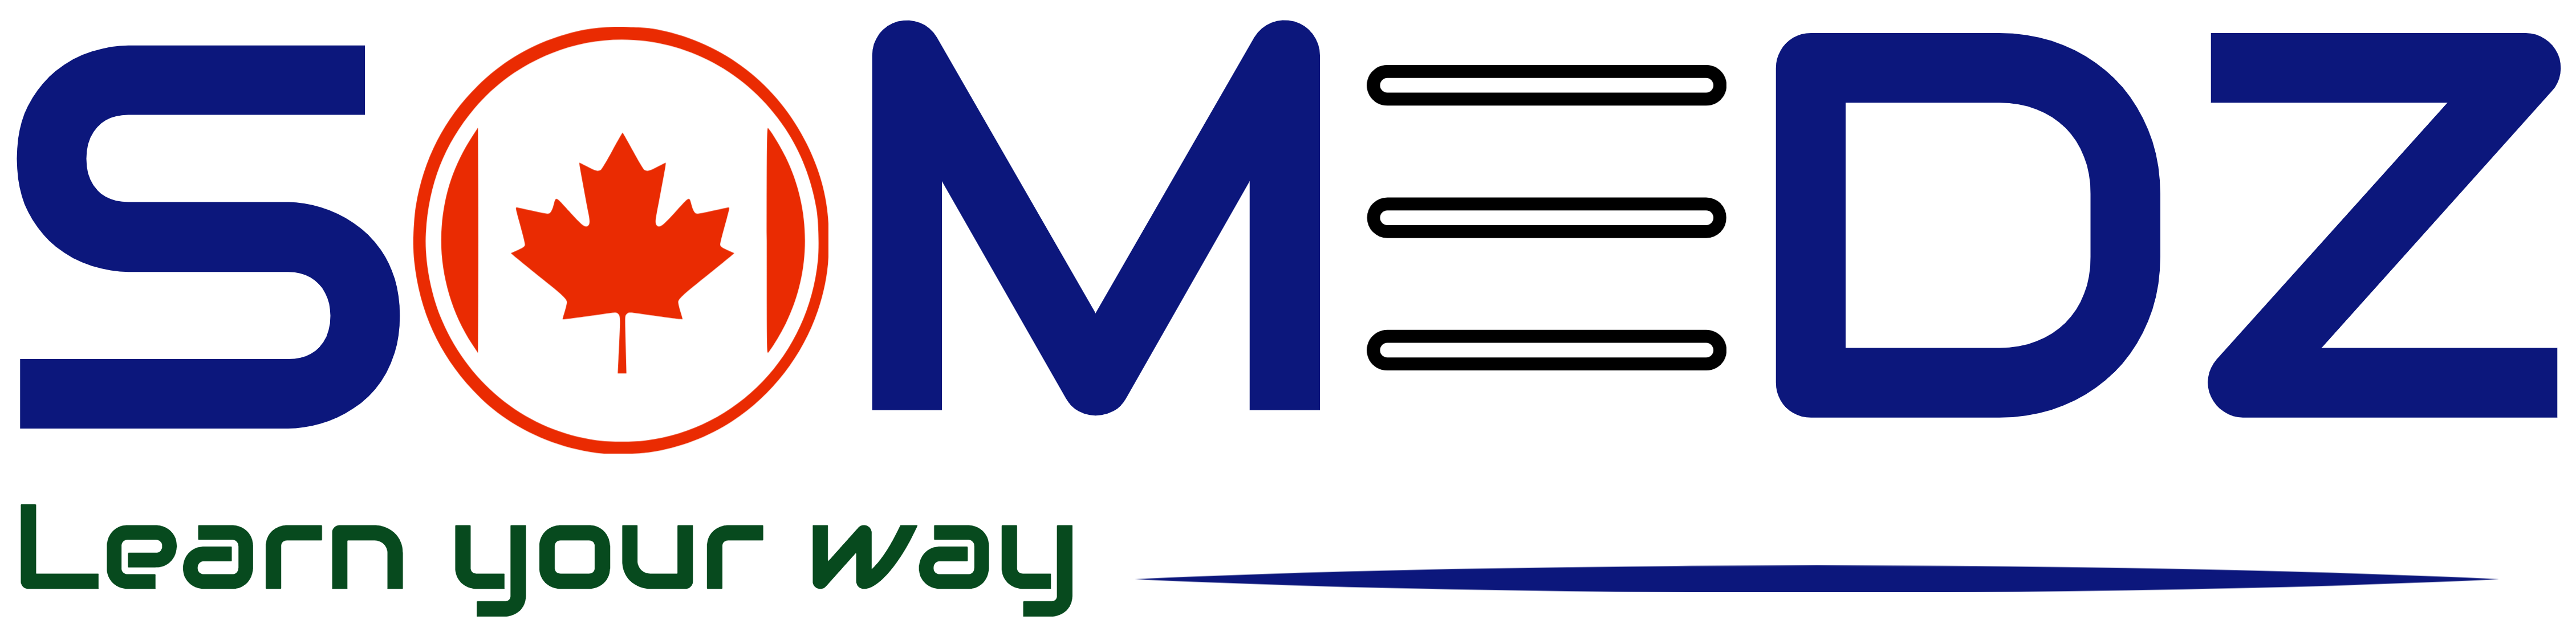 SOMEDZ Logo